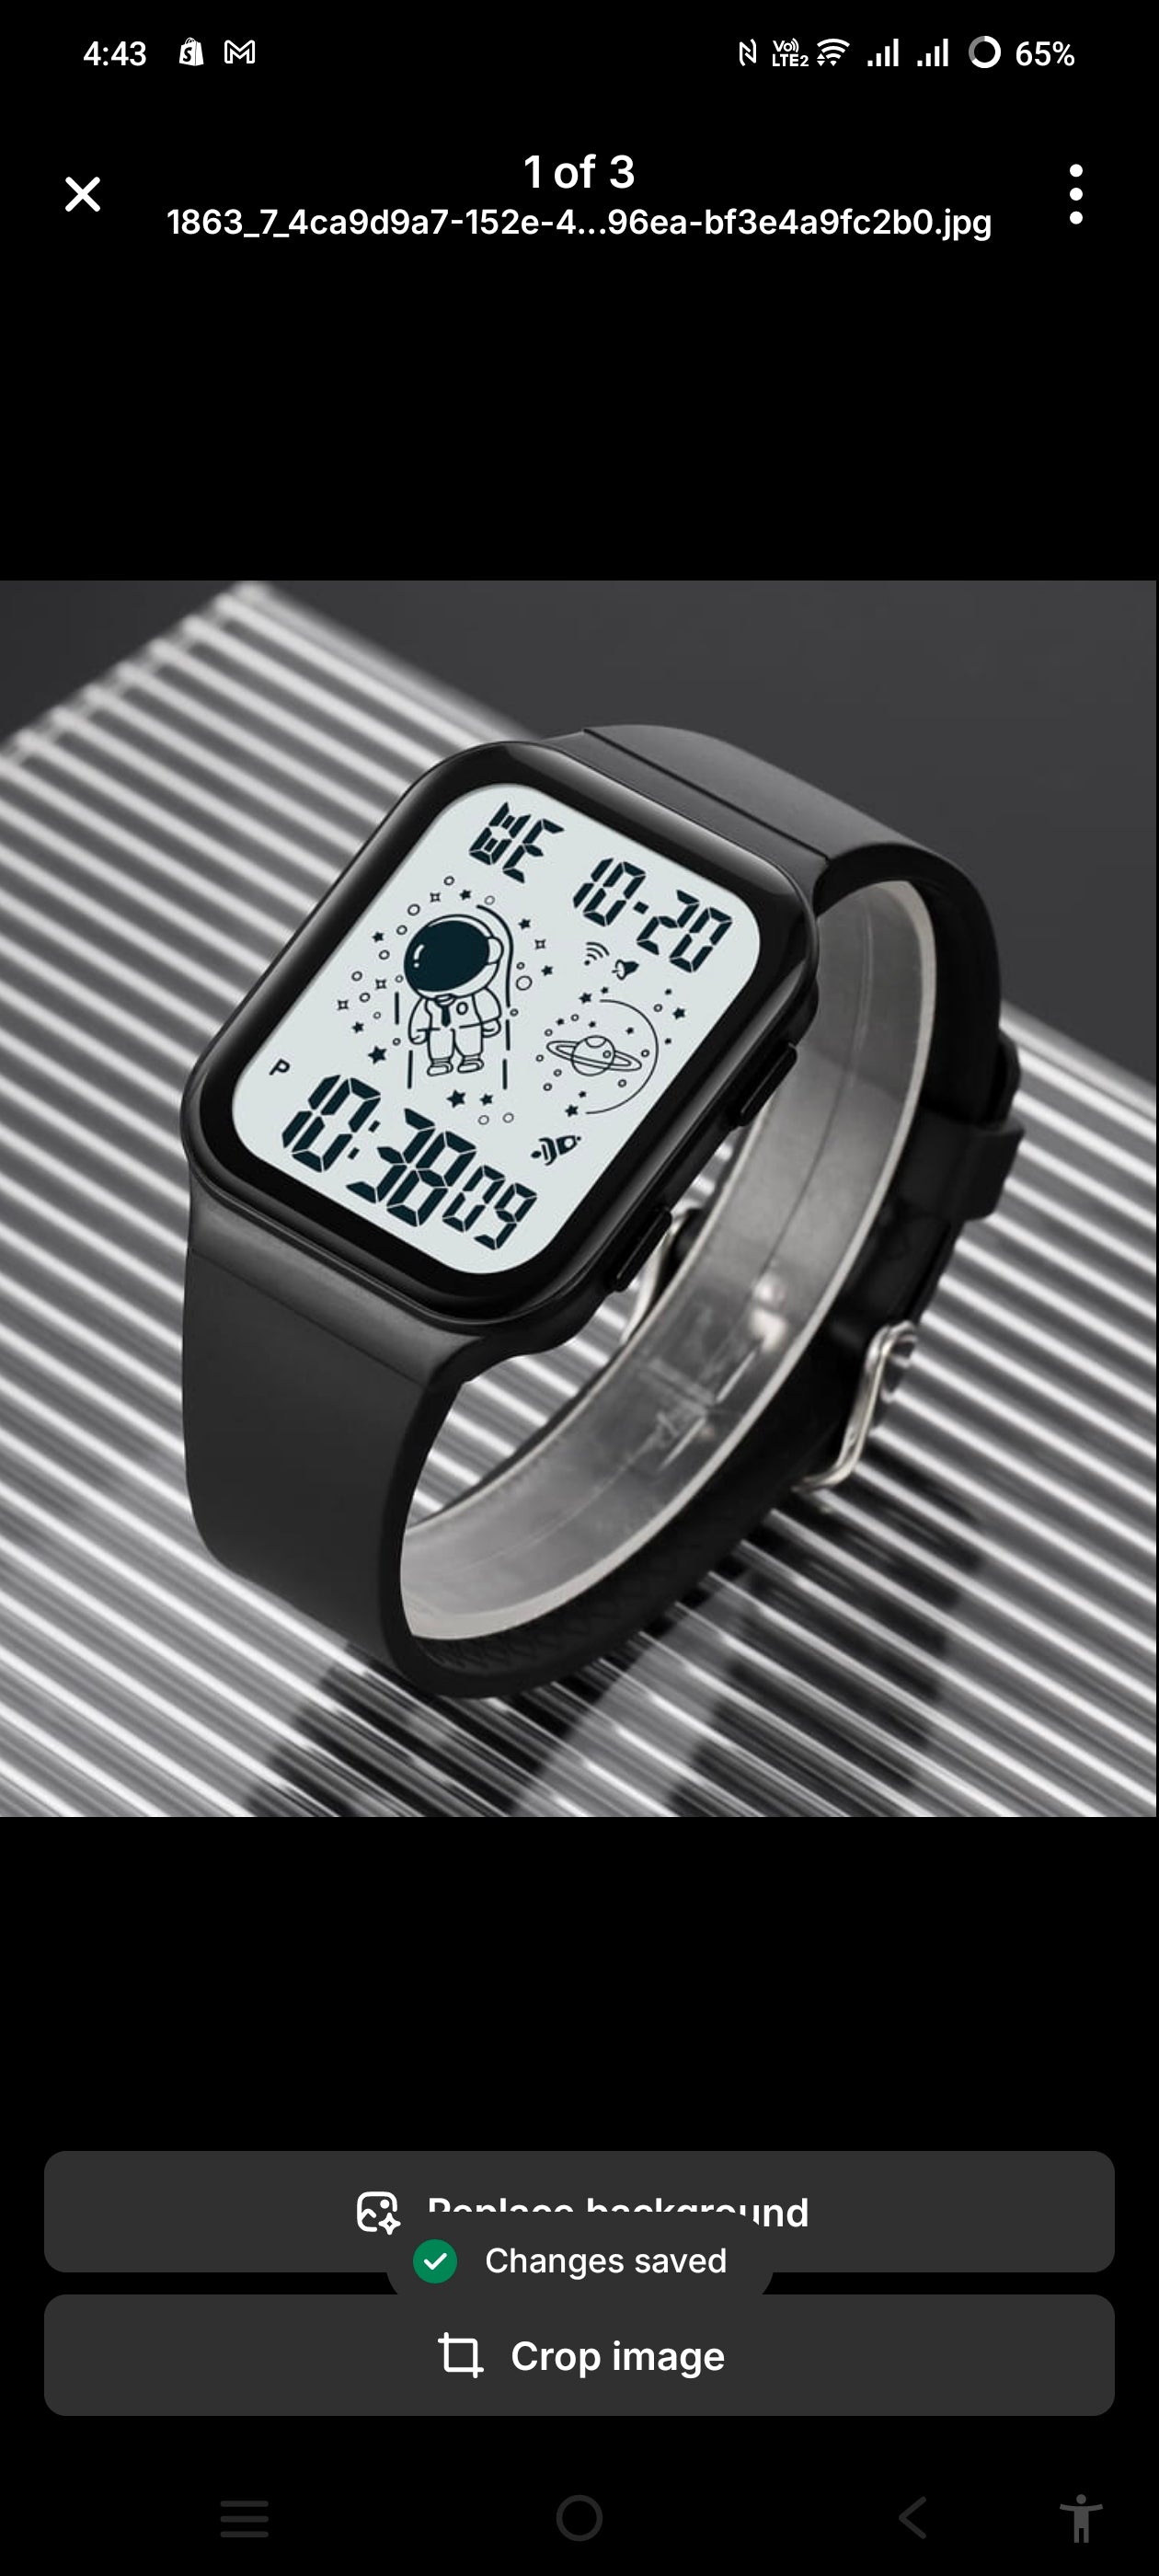 New Fashion LED Digital Watch For Men Women Alarm Sport Waterproof Luminous Watch